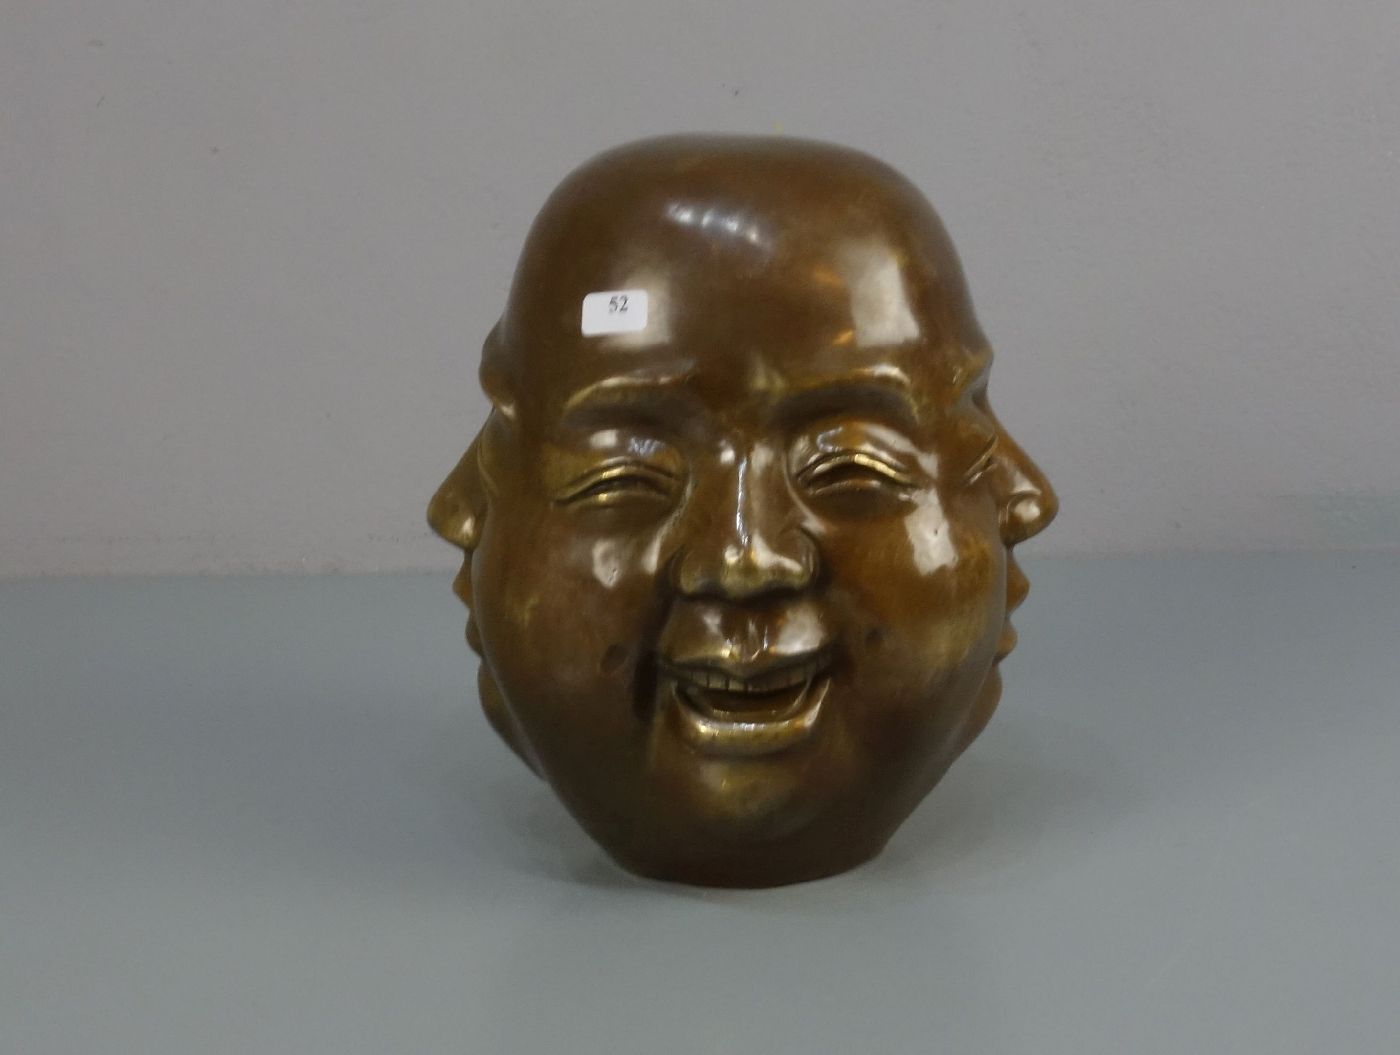 CHINESISCHER BILDHAUER des 20. Jh., Skulptur / sculpture: "Kopf mit vier Gesichtern", Bronze,